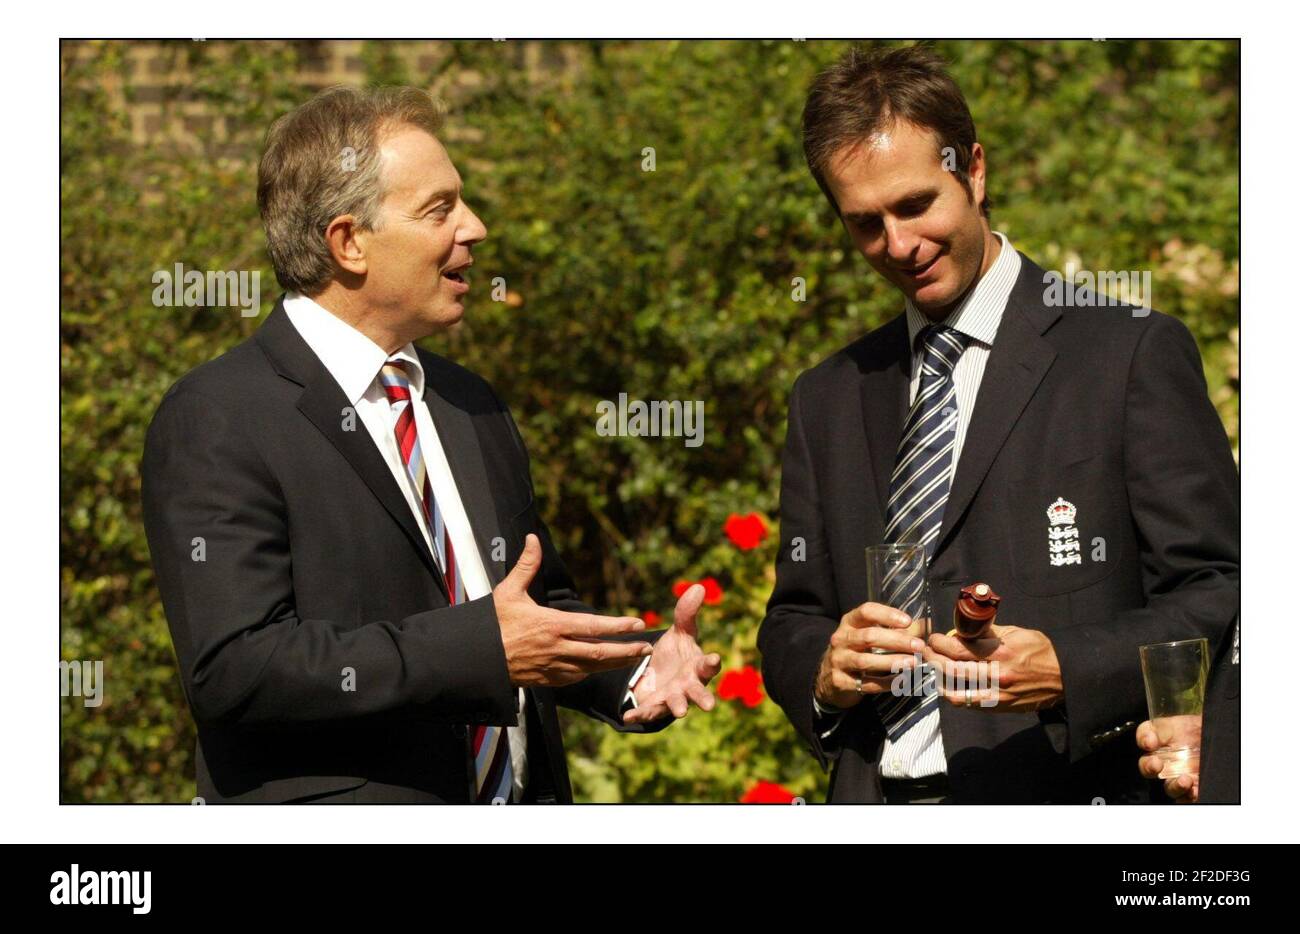 Tony Blair stellte Mitgliedern ihrer Cricket-Teams durch Michael Vaughan und Clair Connor im Garten von Downing st.Pool Bild David Sandison 13/9/2005 Stockfoto